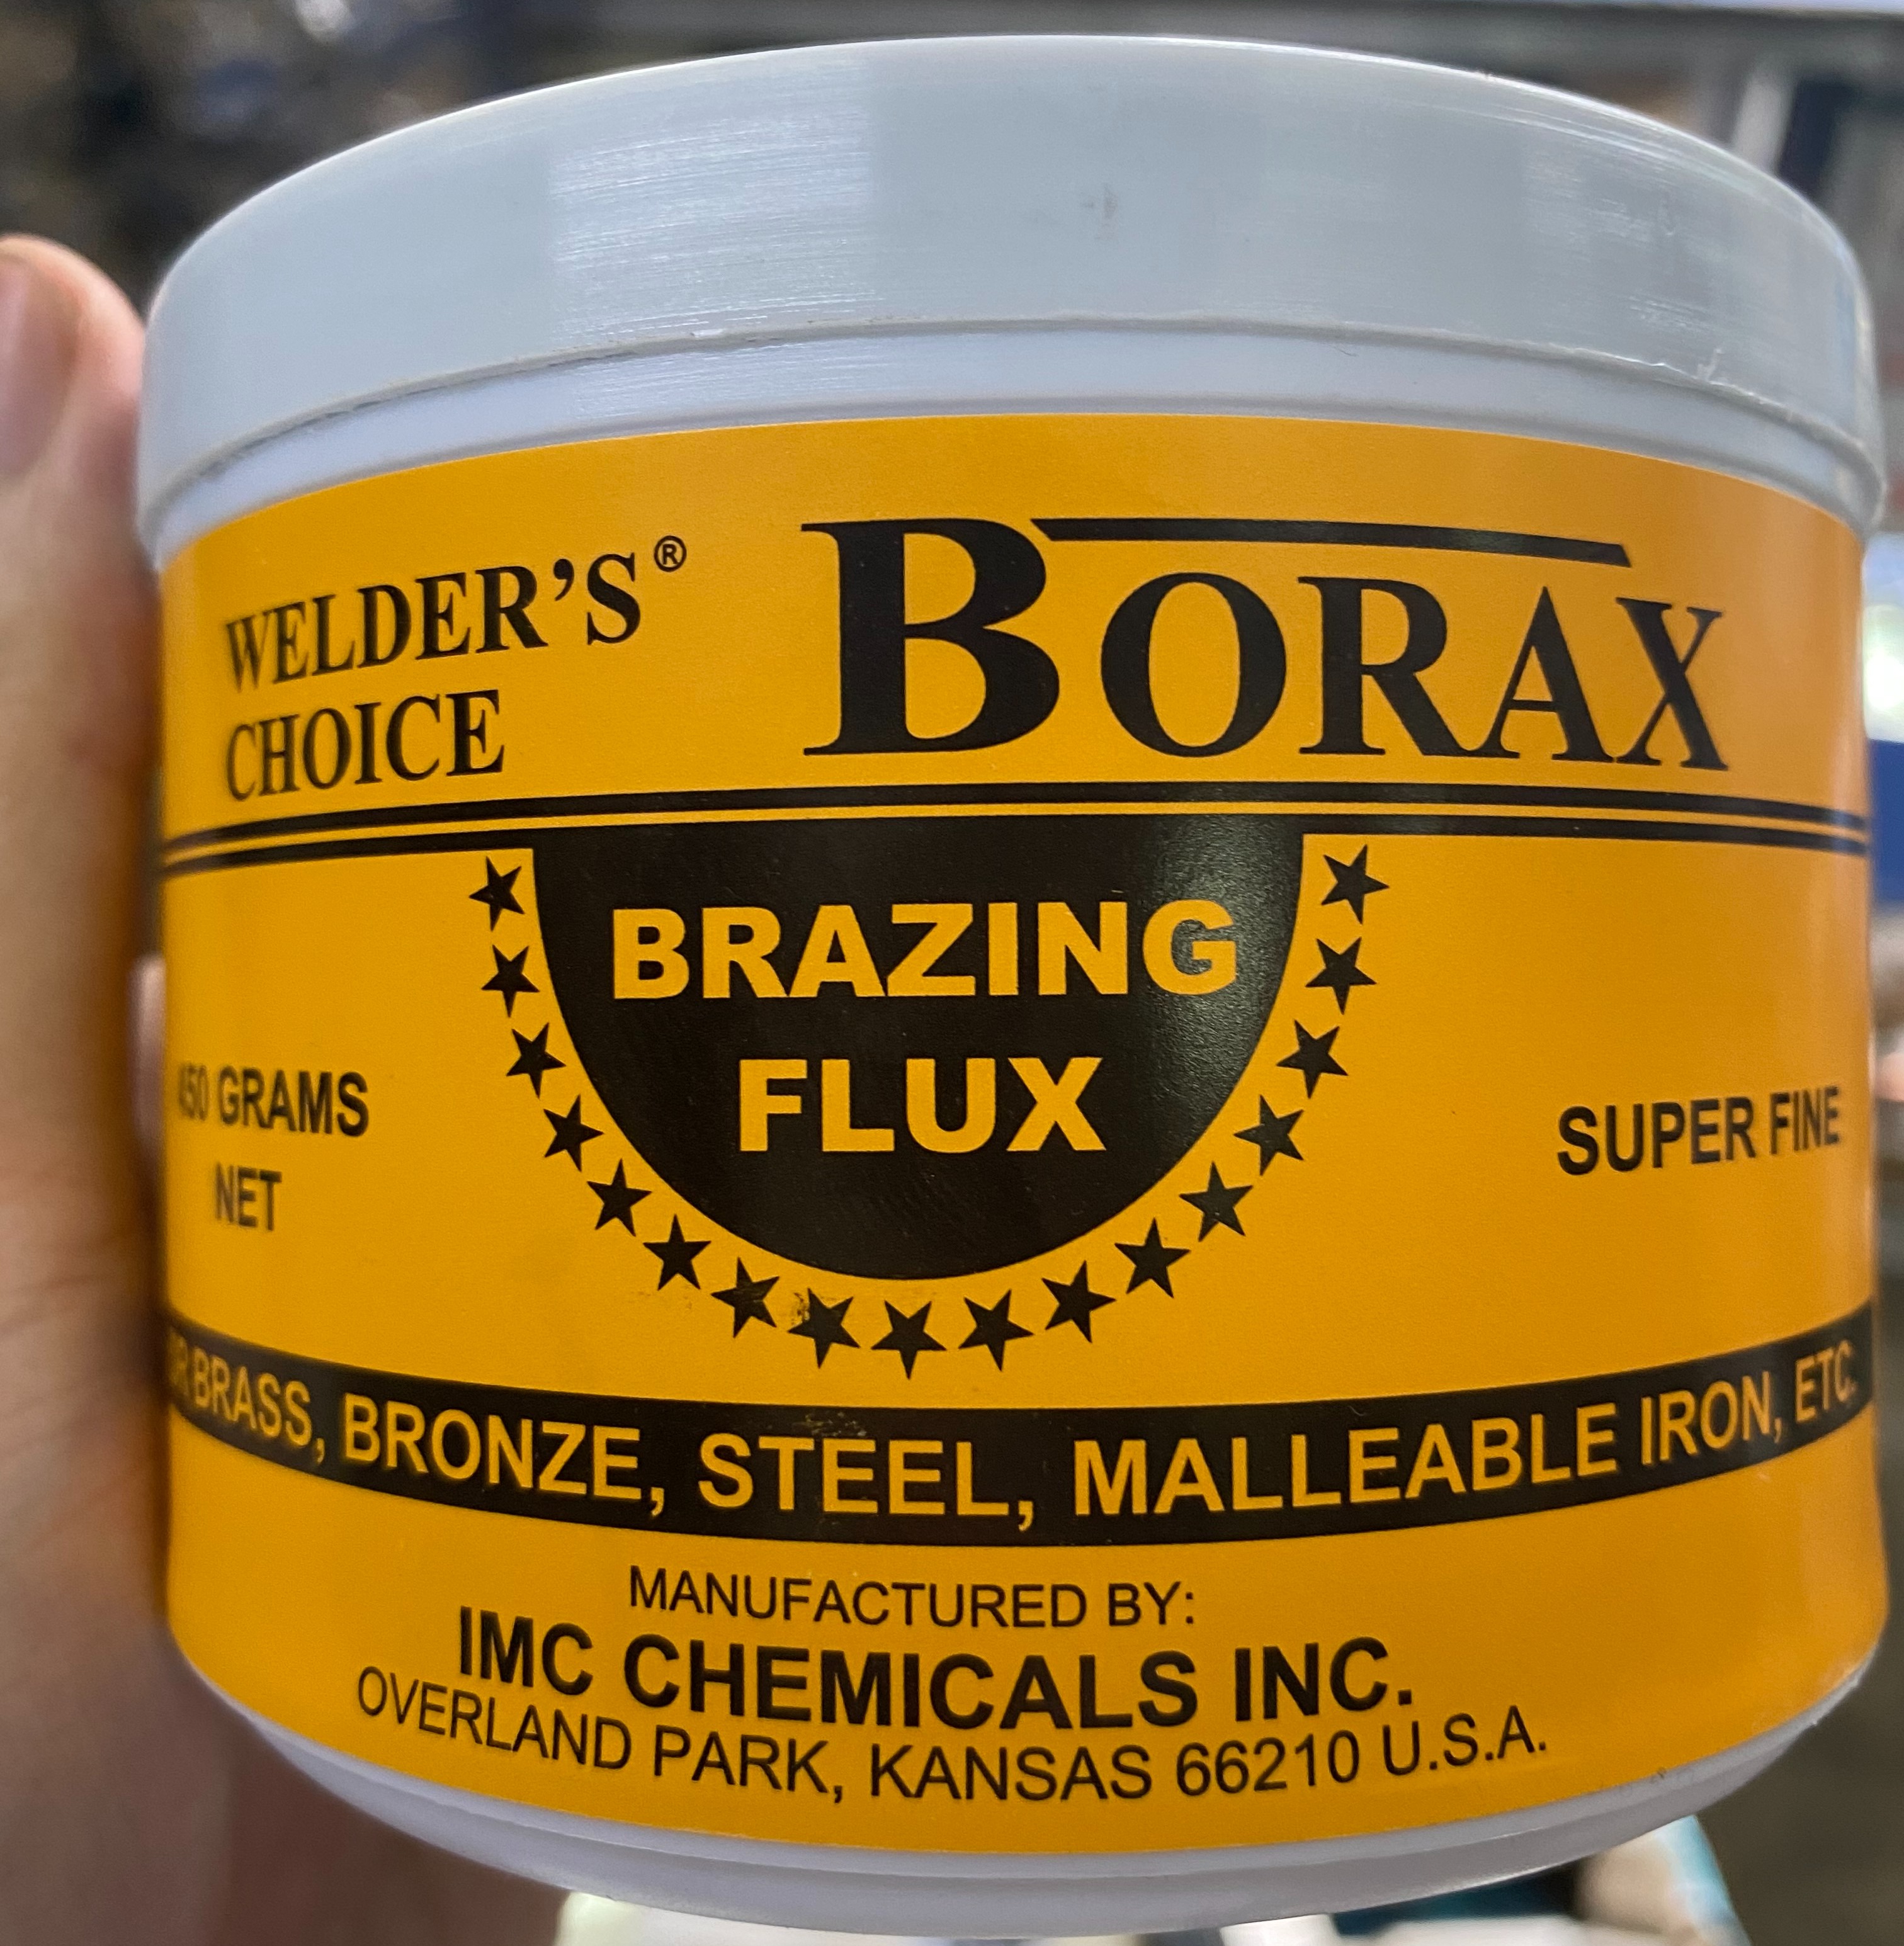 Borax Flux